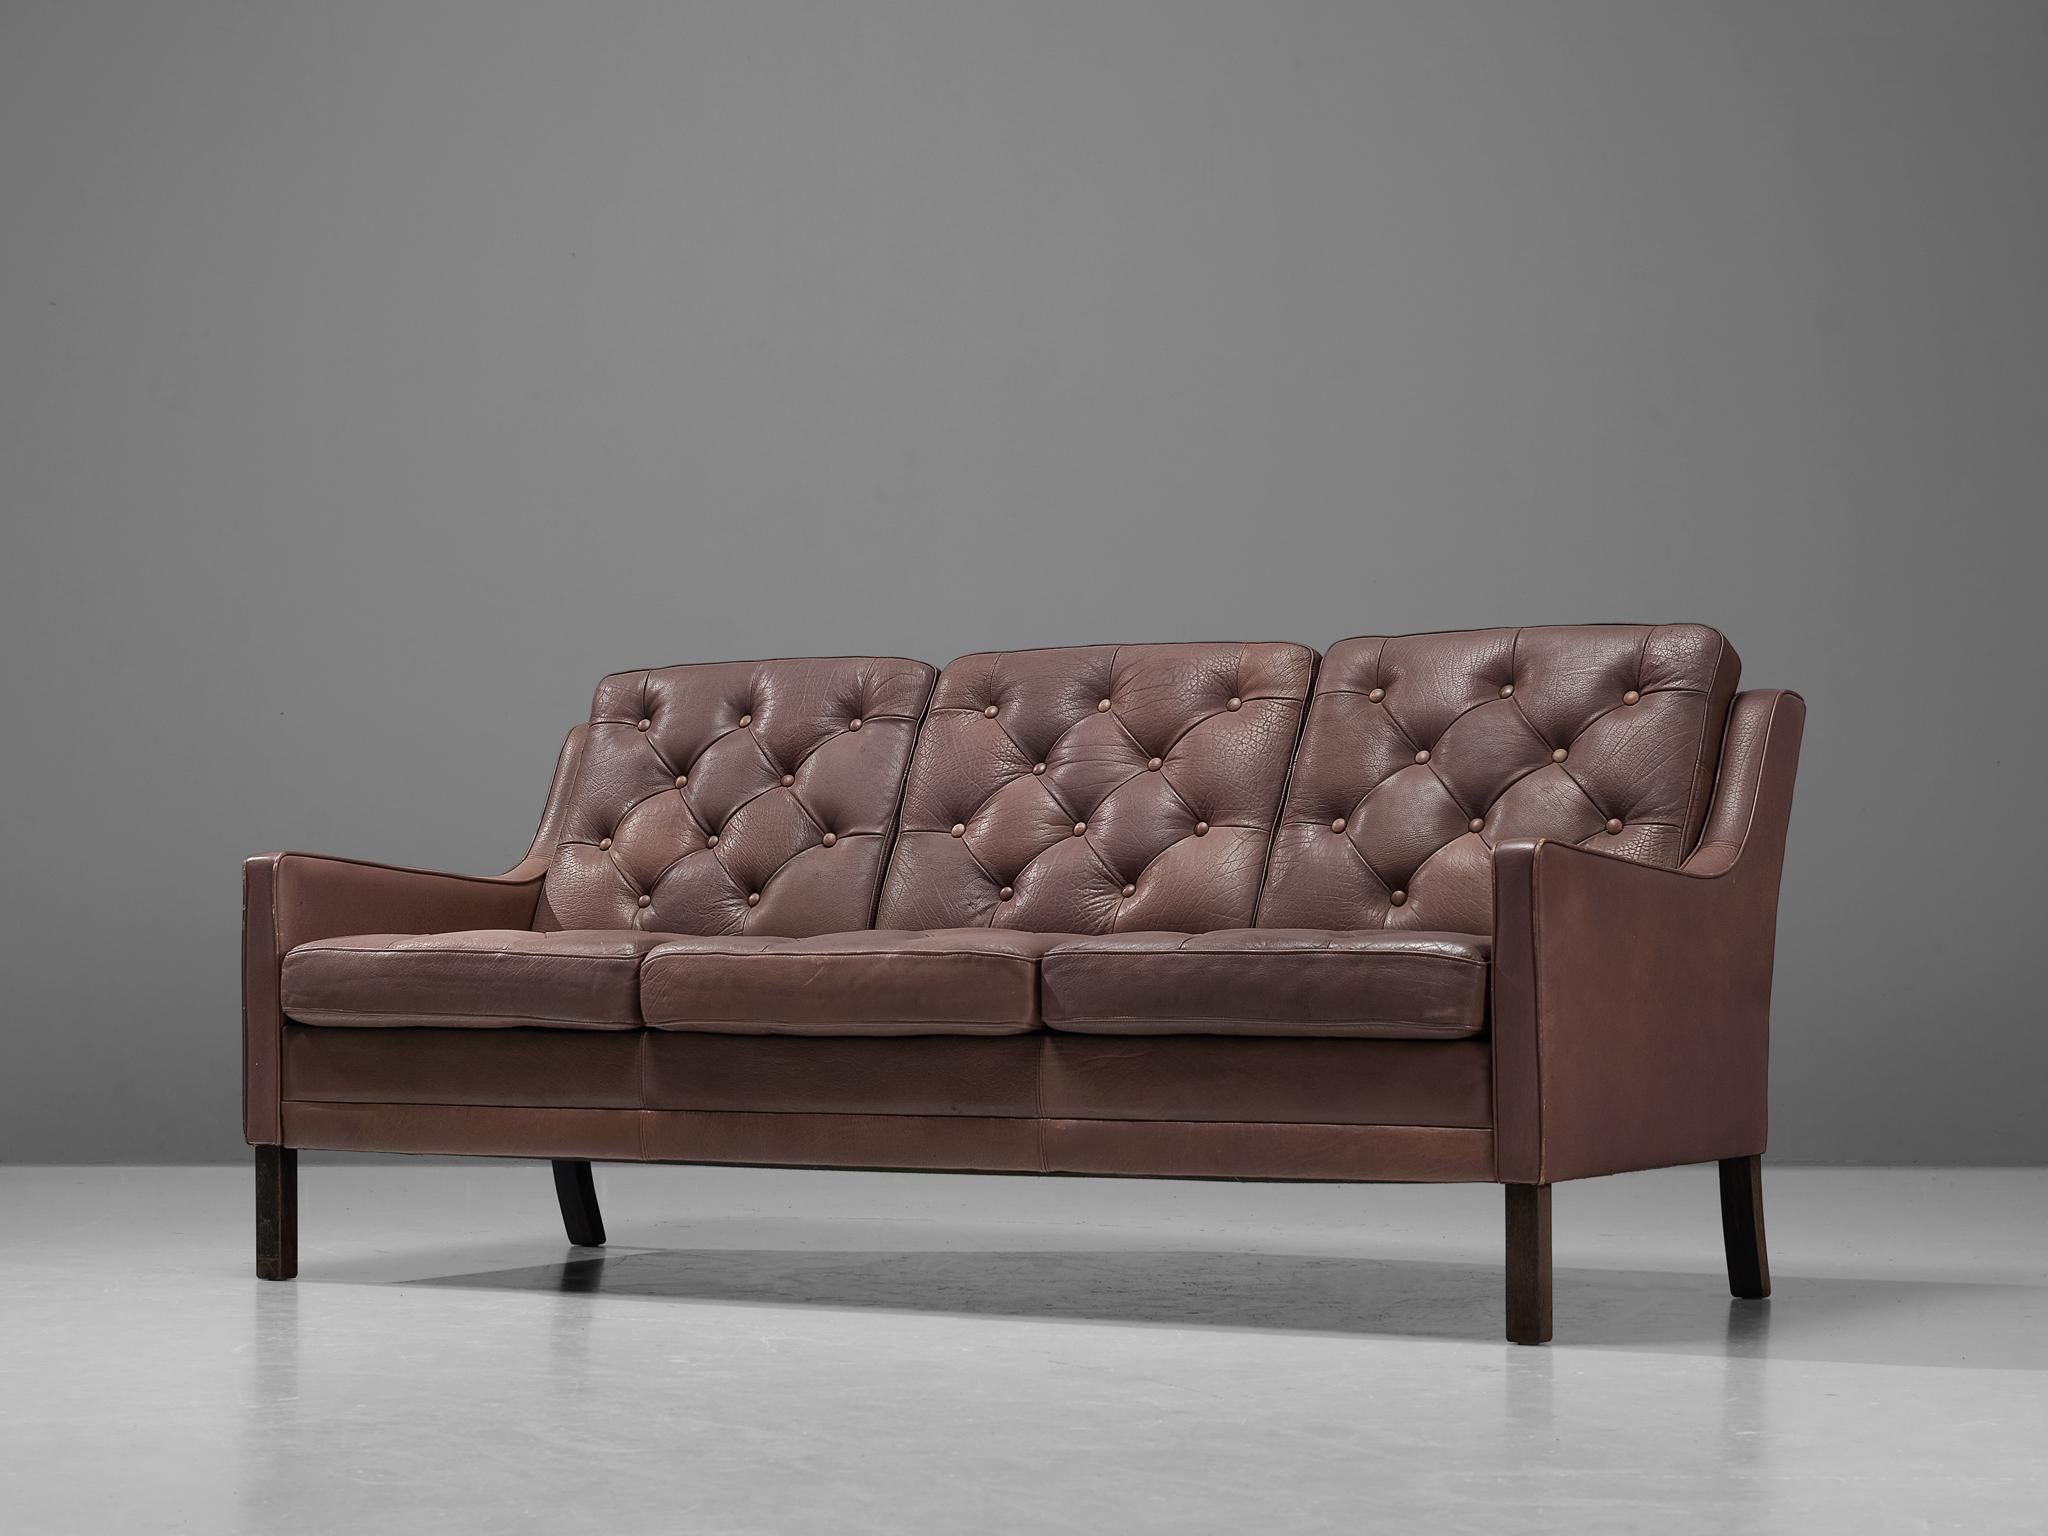 Sofa, Leder, Holz, Dänemark, 1960er Jahre

Dieses Modell erinnert an die Entwürfe von Borge Mogensen. Das braune Leder weist eine leichte Patina auf und ist in sehr gutem Zustand. Die dämmerungsgefüllten Kissen mit Zierknöpfen sorgen für einen